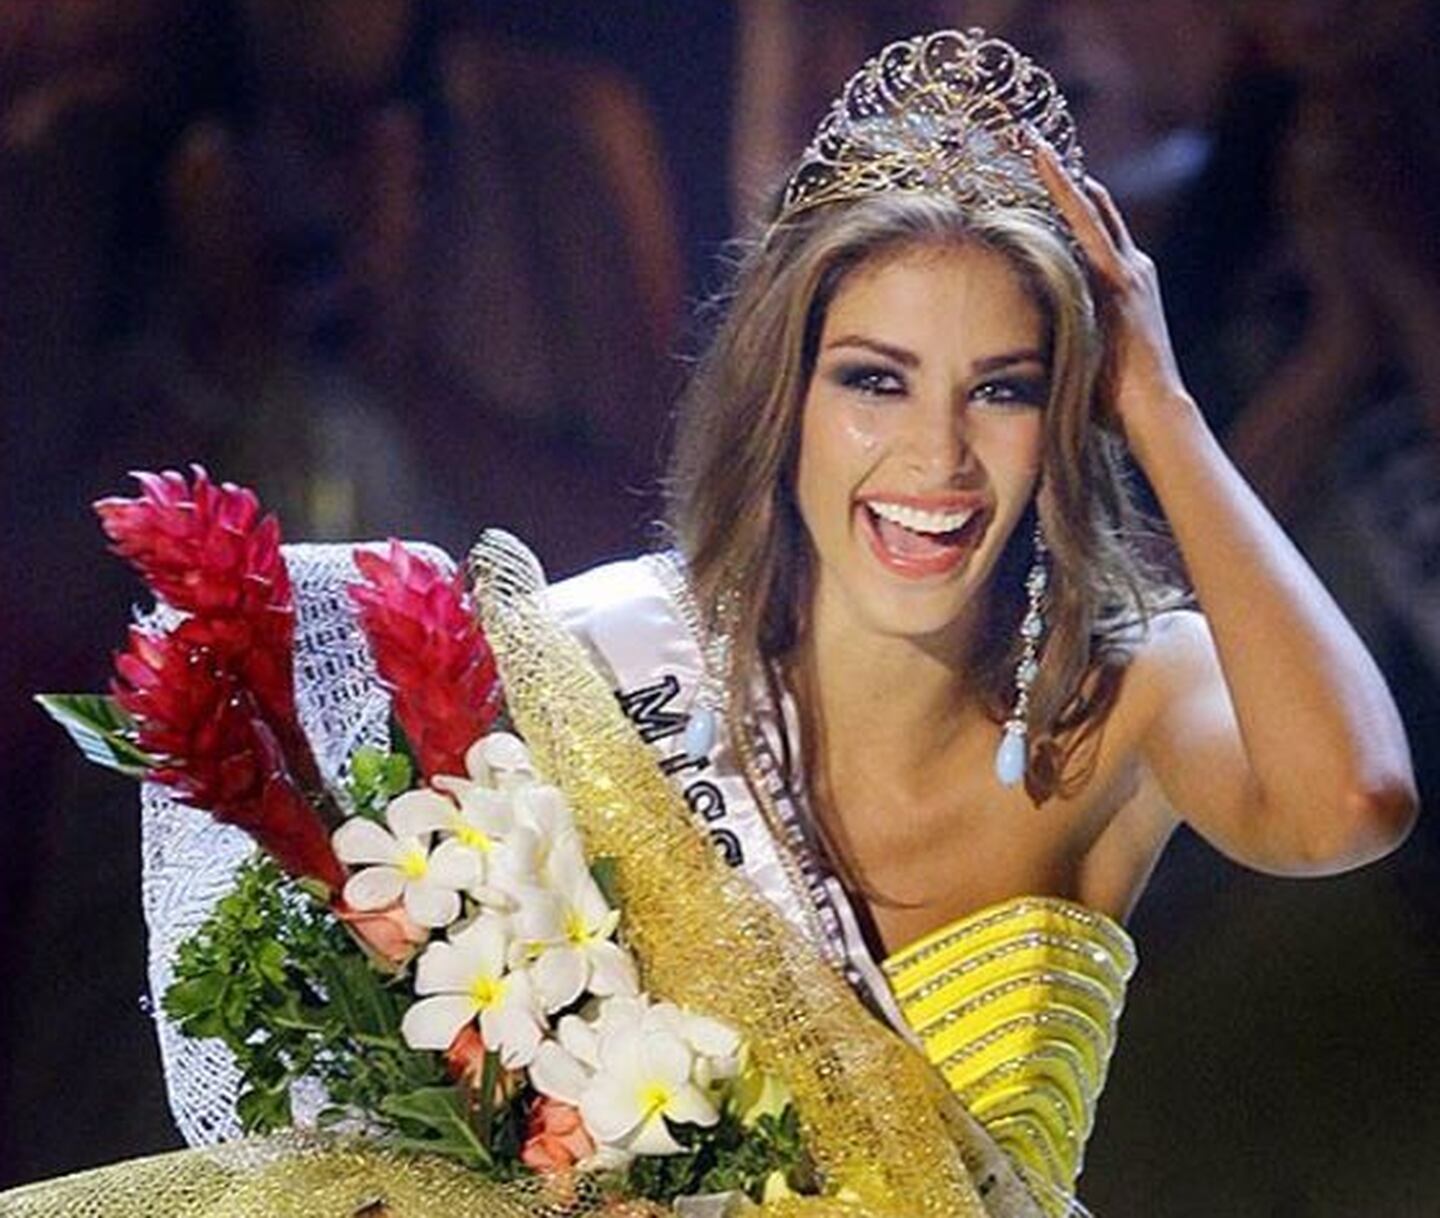 Miss Universo 2008 se graduó con honores en una prestigiosa universidad en Estados Unidos – Latfan